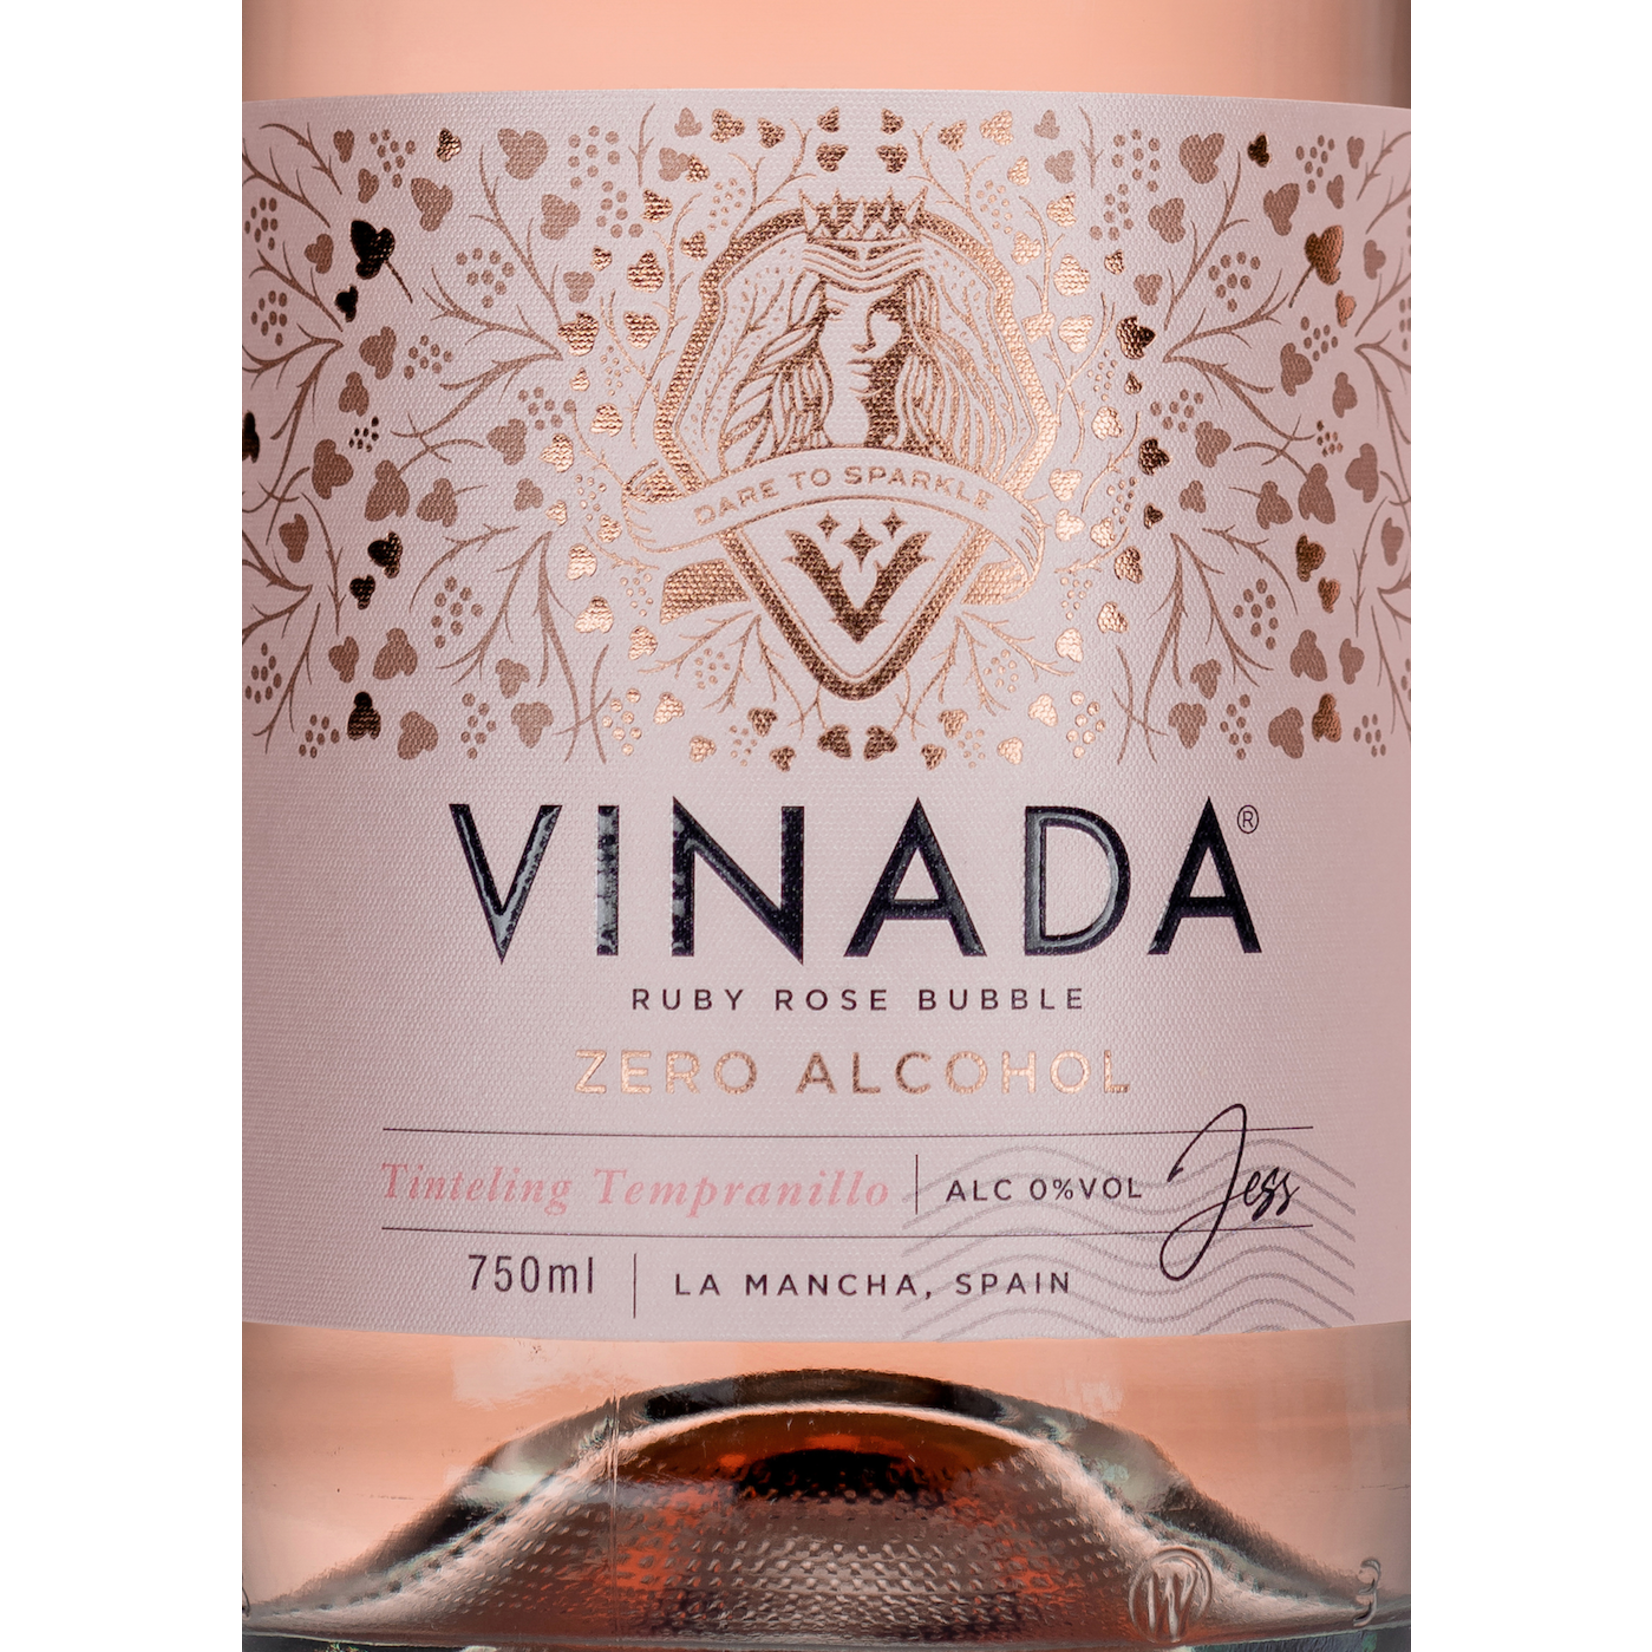 VINADA Tinteling Tempranillo Rosé (0%) 750 ml